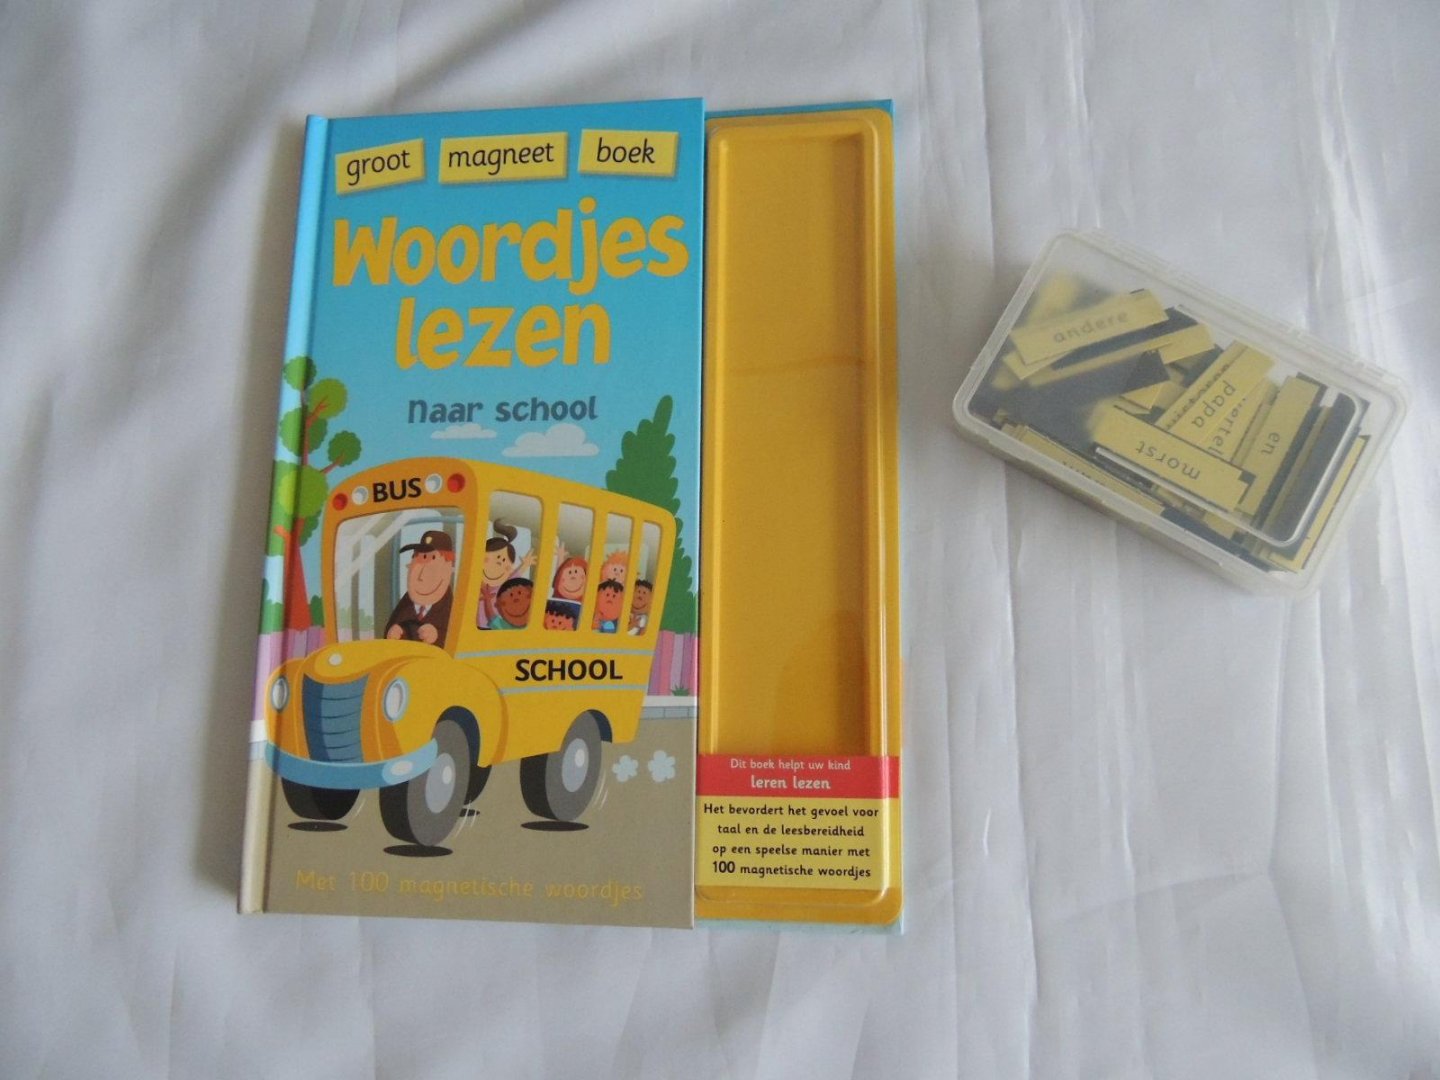 Mortelmans - woordjes lezen naar school - groot magneet boek - met 100 magnetische woordjes